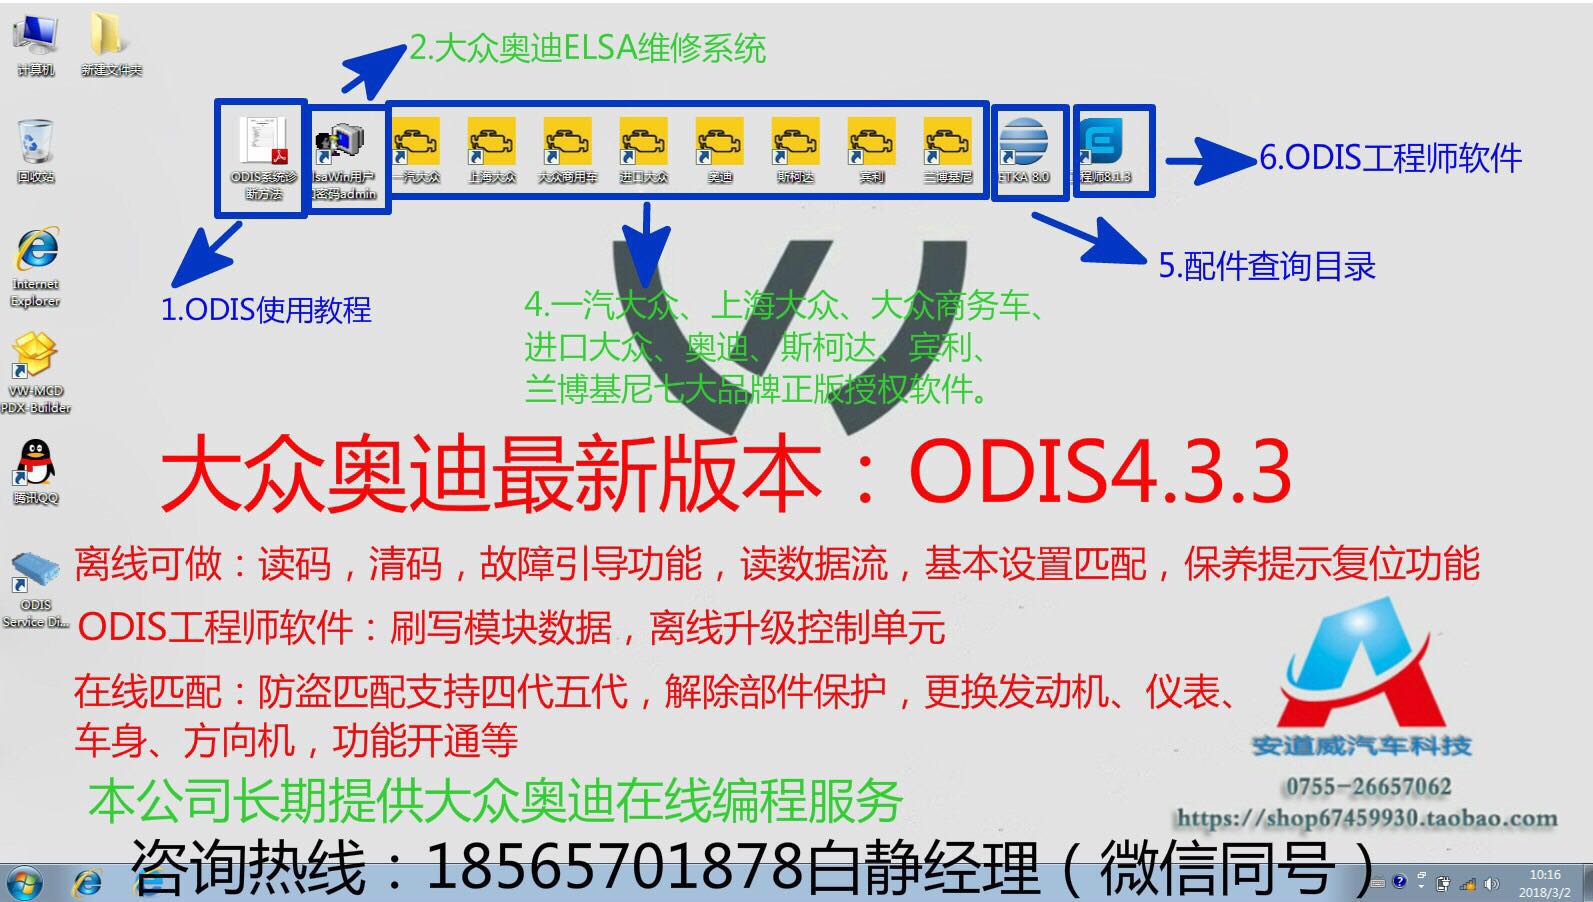 供应 大众奥迪ODIS4.3.3软件 奥迪6150诊断电脑 支持在线编程